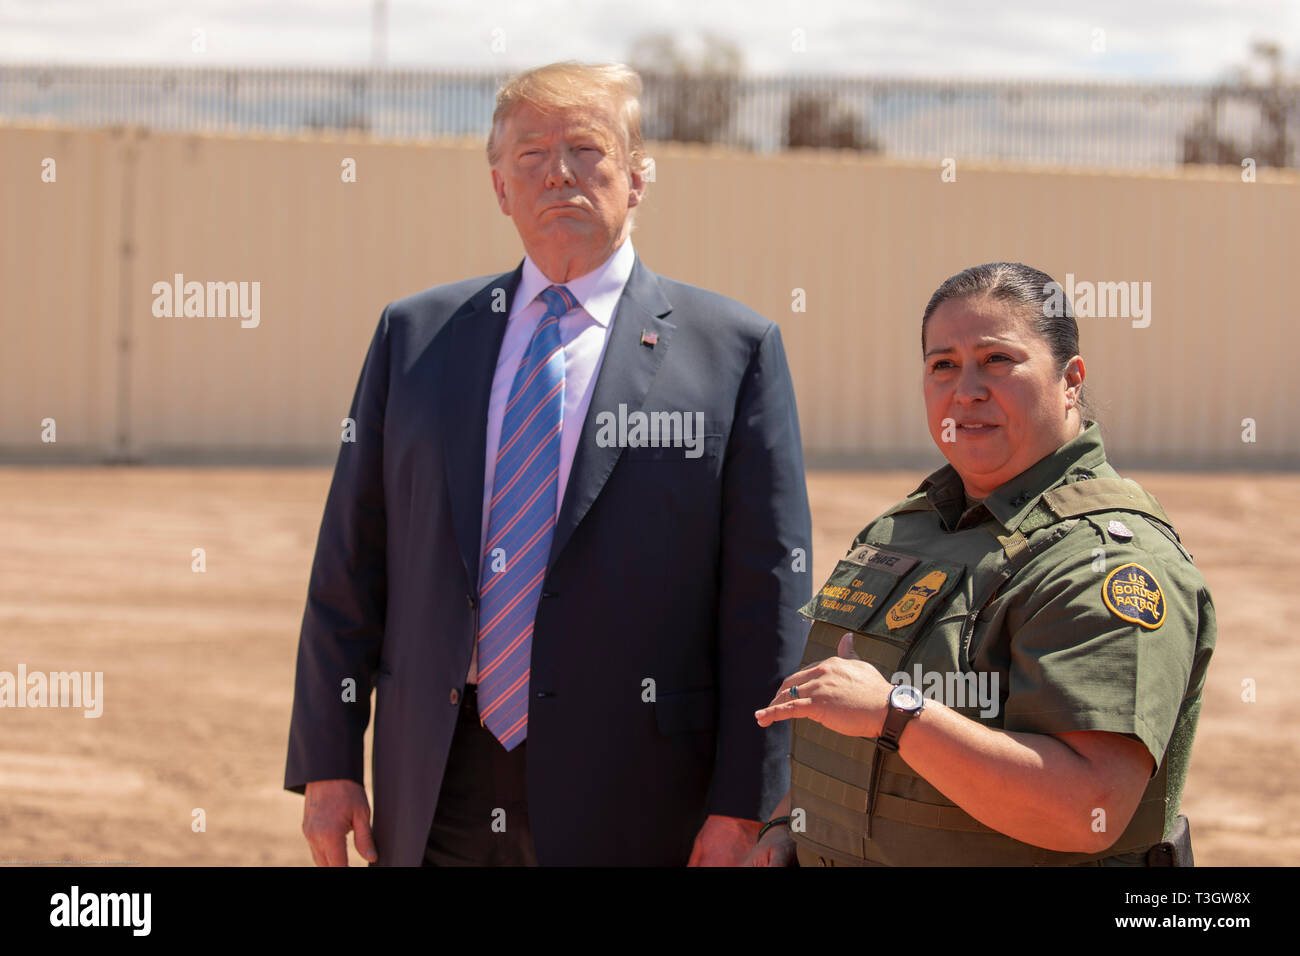 Us-Präsident Donald Trump hört auf CBP-Agent Gloria Chavez, rechts, bei einem Besuch in Calexico, Kalifornien an der Grenze patrouillieren Calexico Station April 5, 2019. Trump besuchte den Abschnitt der Wand bei Calexico, war Teil eines Projekts unter Präsident Obama gestartet. Stockfoto